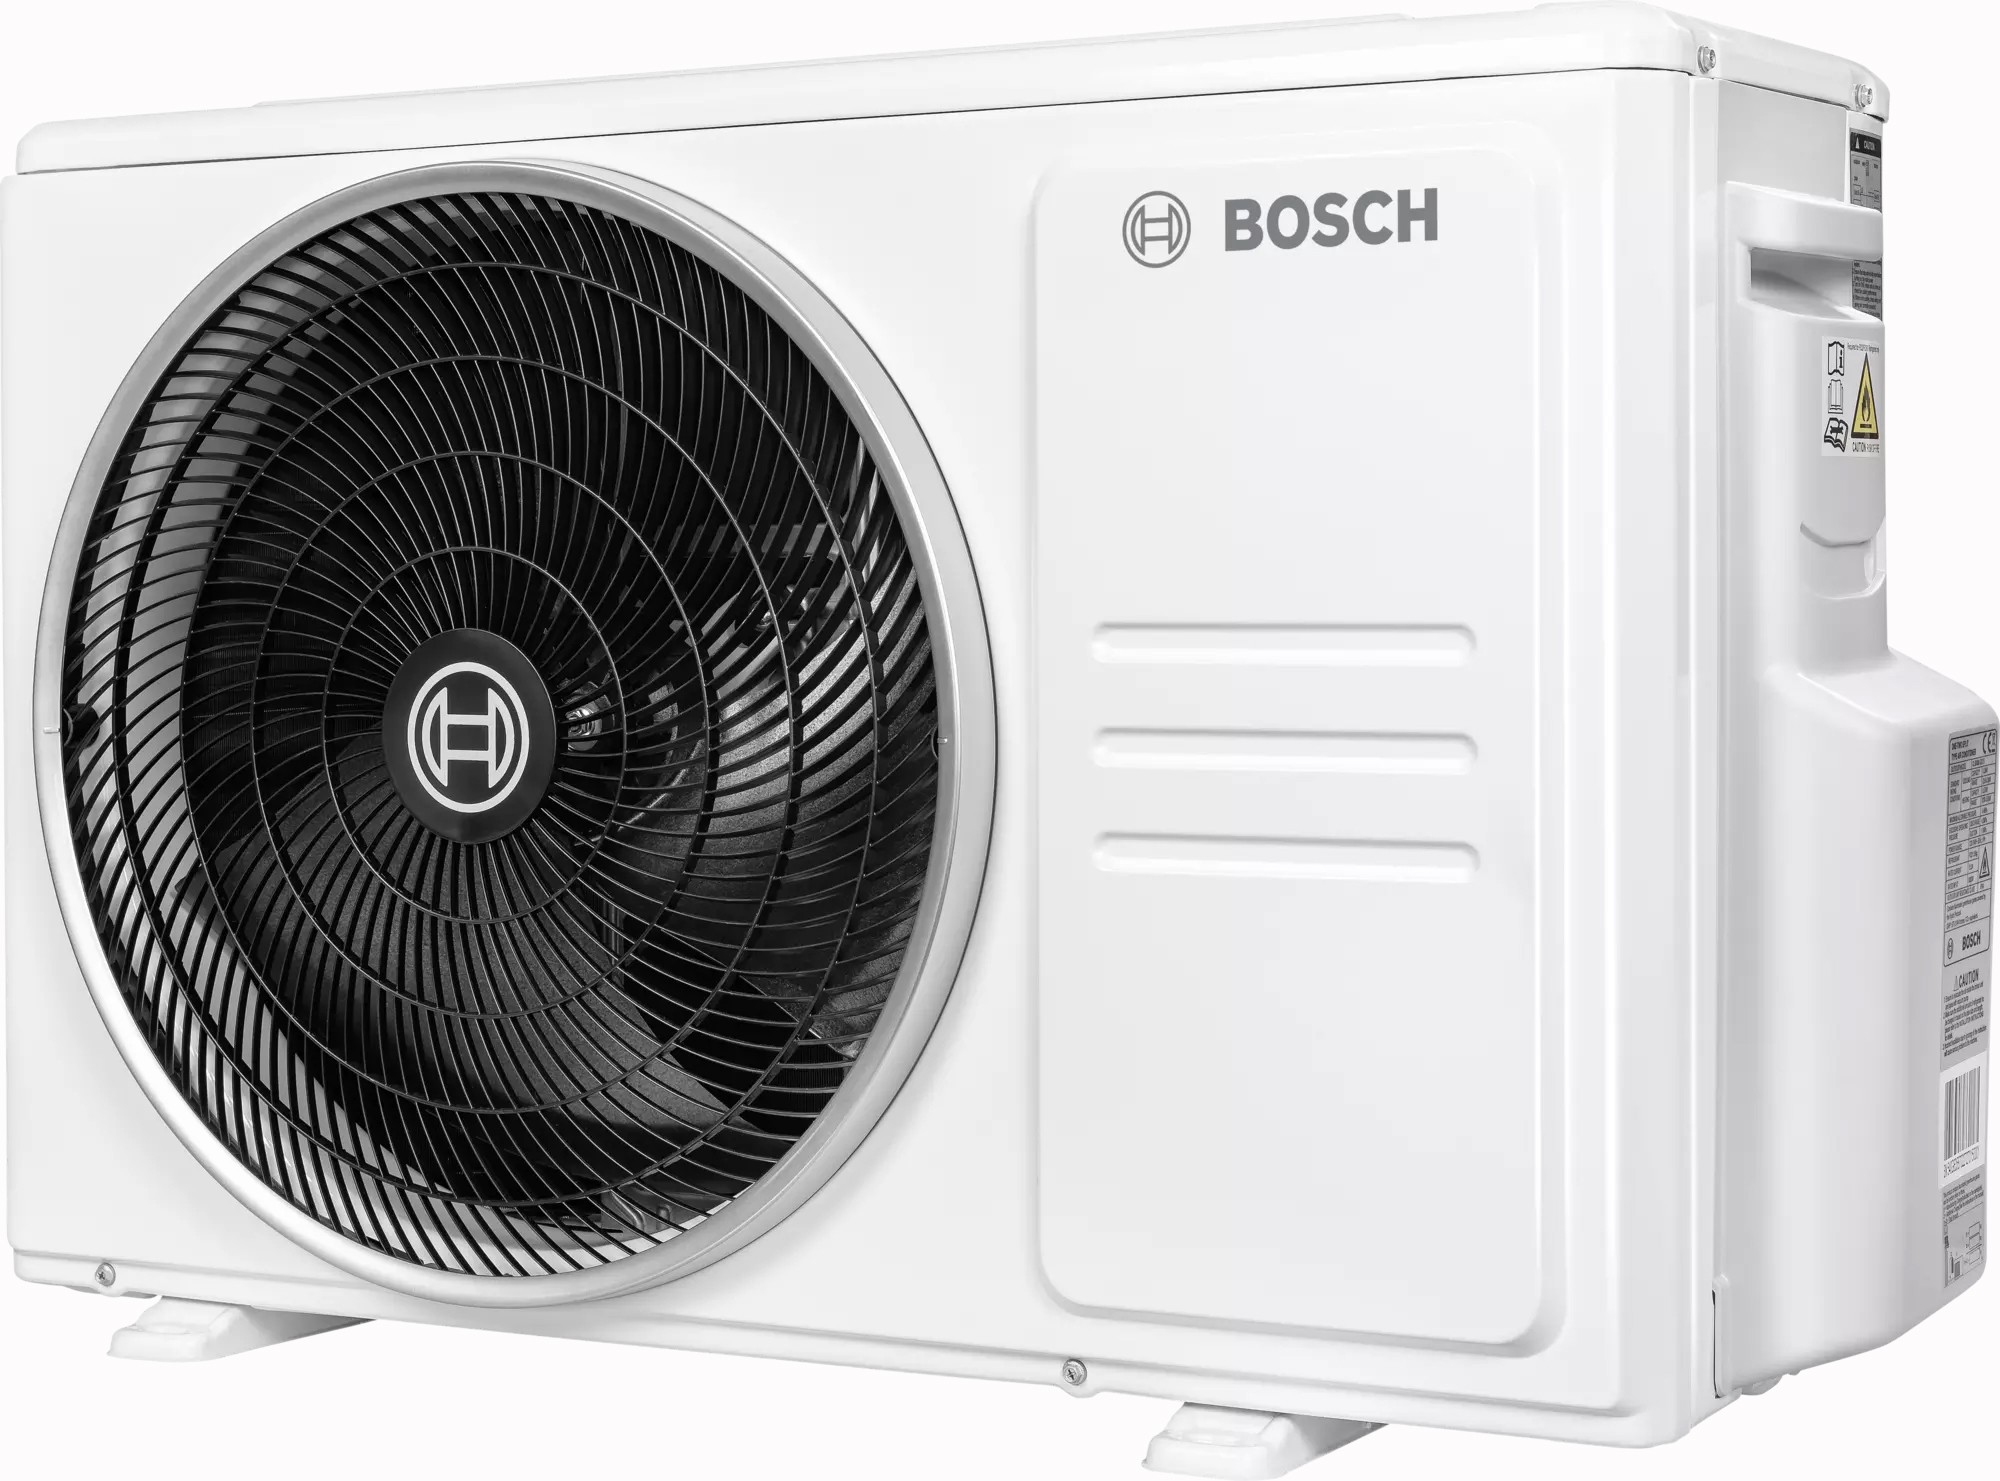 Наружный блок мультисплит-системы Bosch CL5000M 79/3 E, 7,9 кВт отзывы - изображения 5